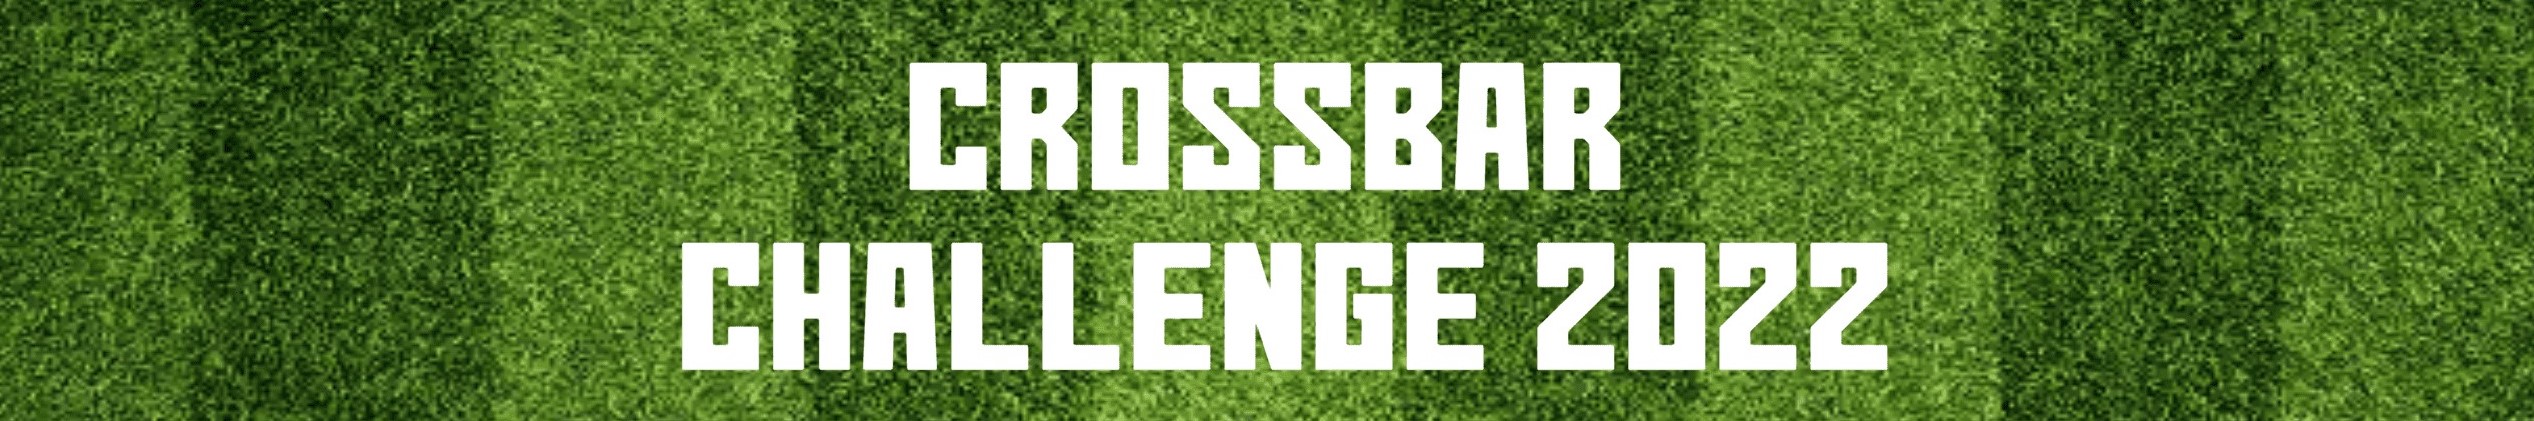 Crossbar Challenge 2022